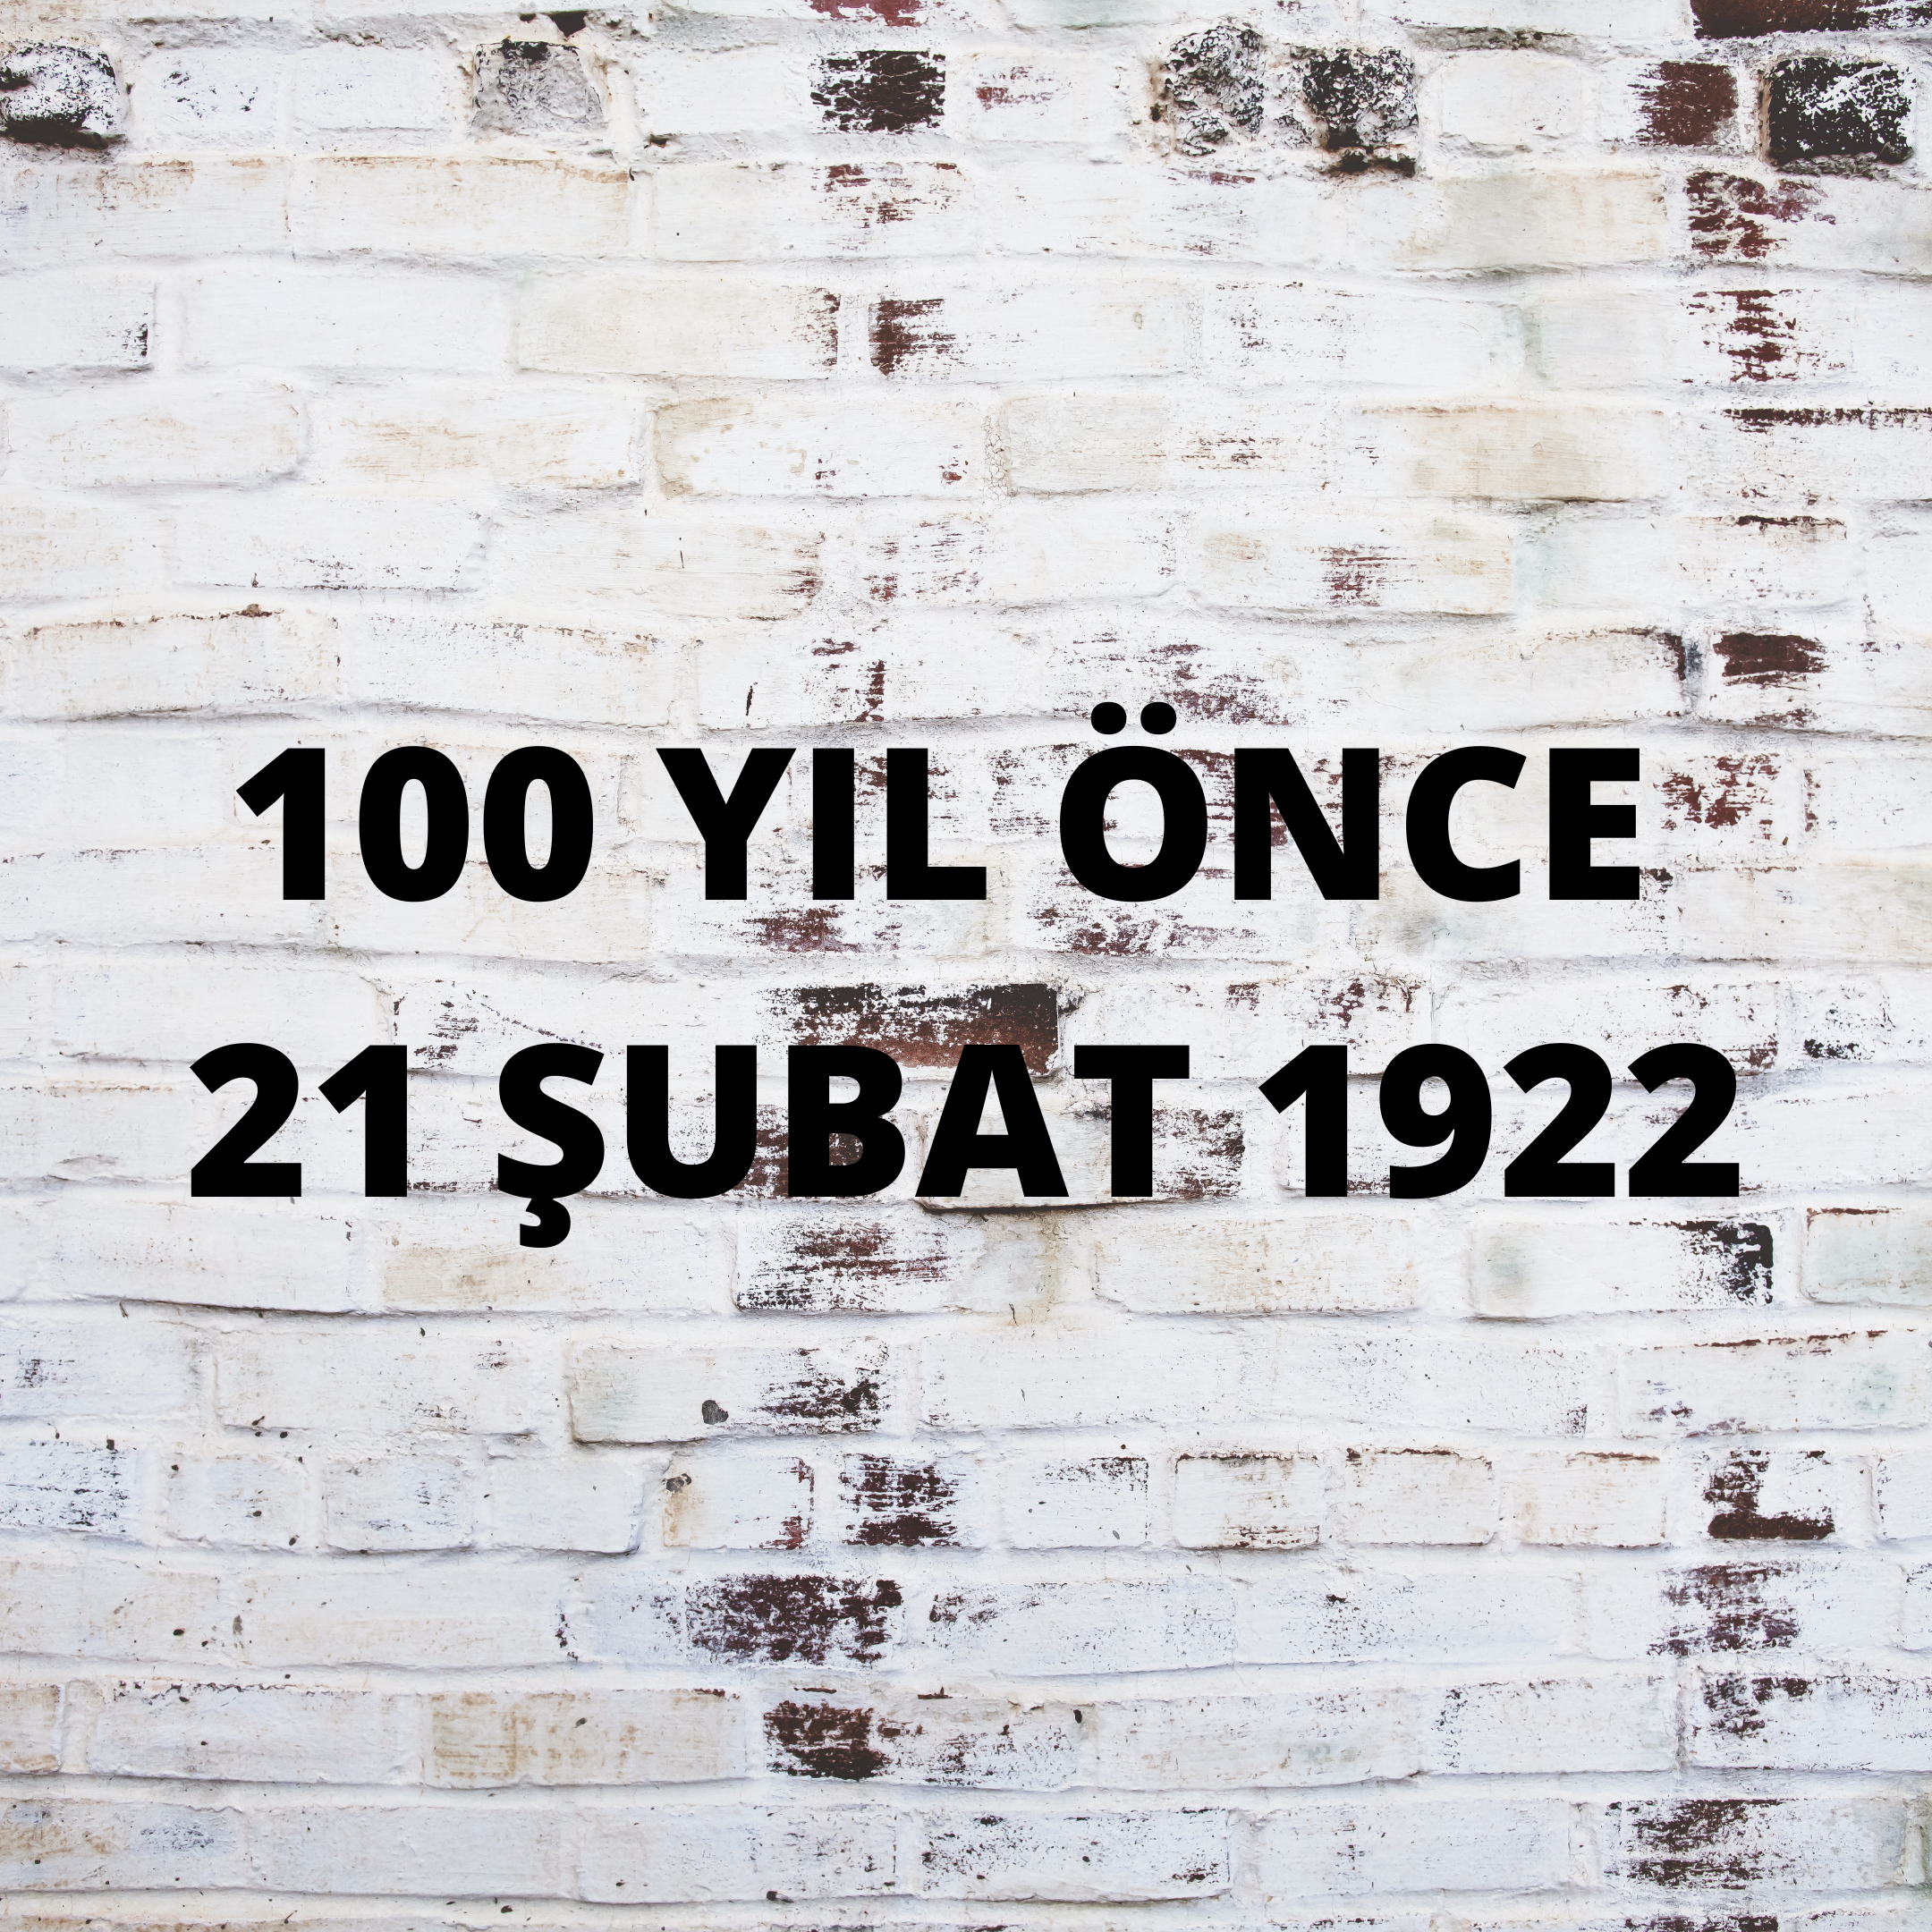 100 YIL ÖNCE 21 ŞUBAT 1922